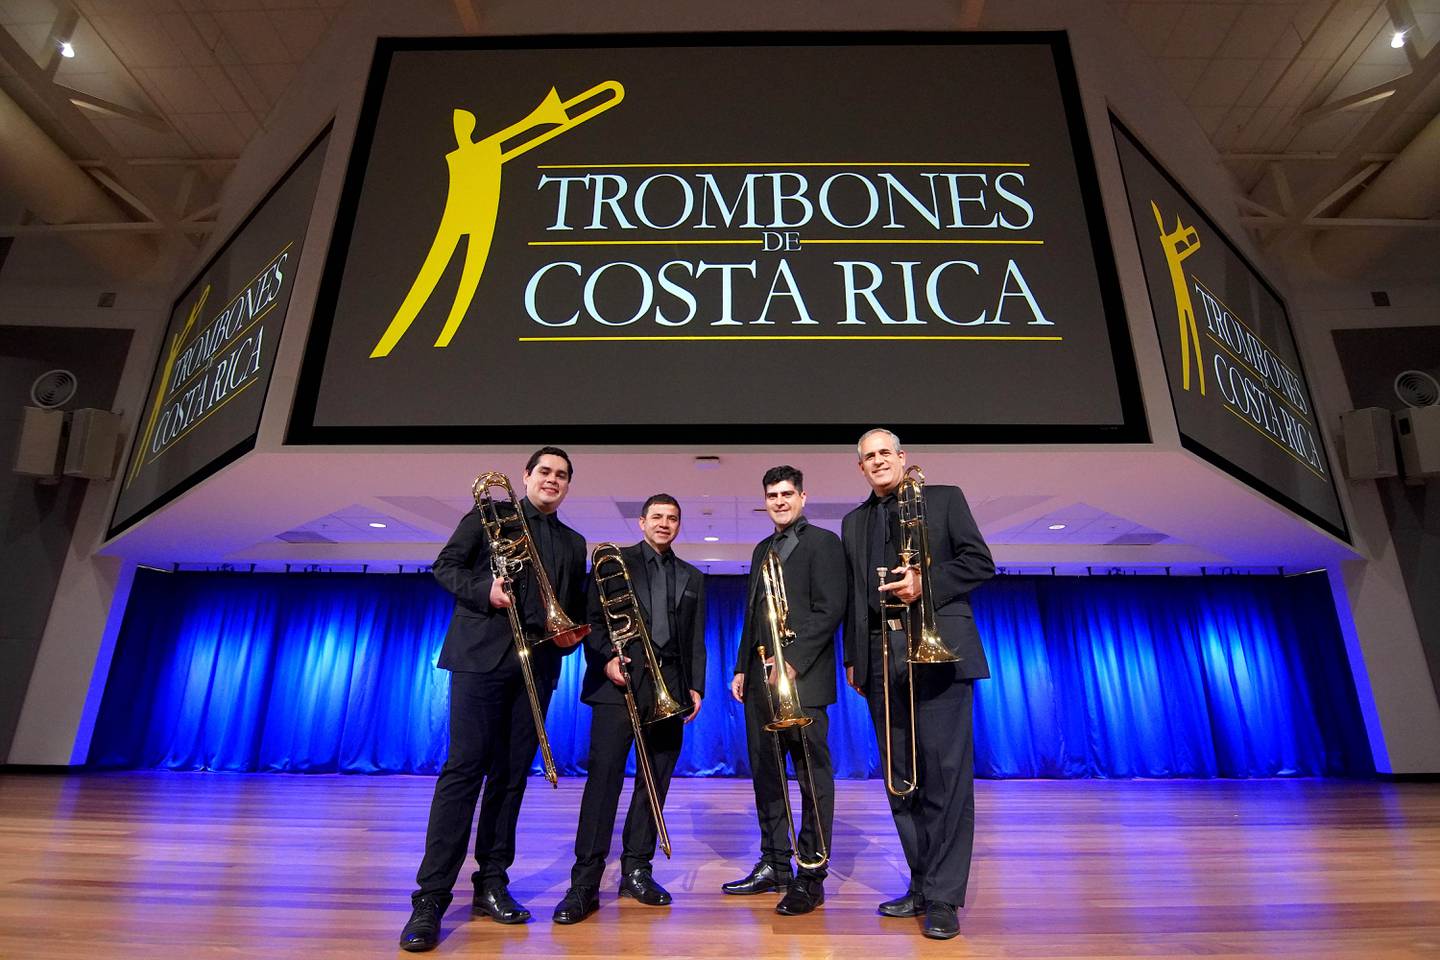 Trombones de Costa Rica